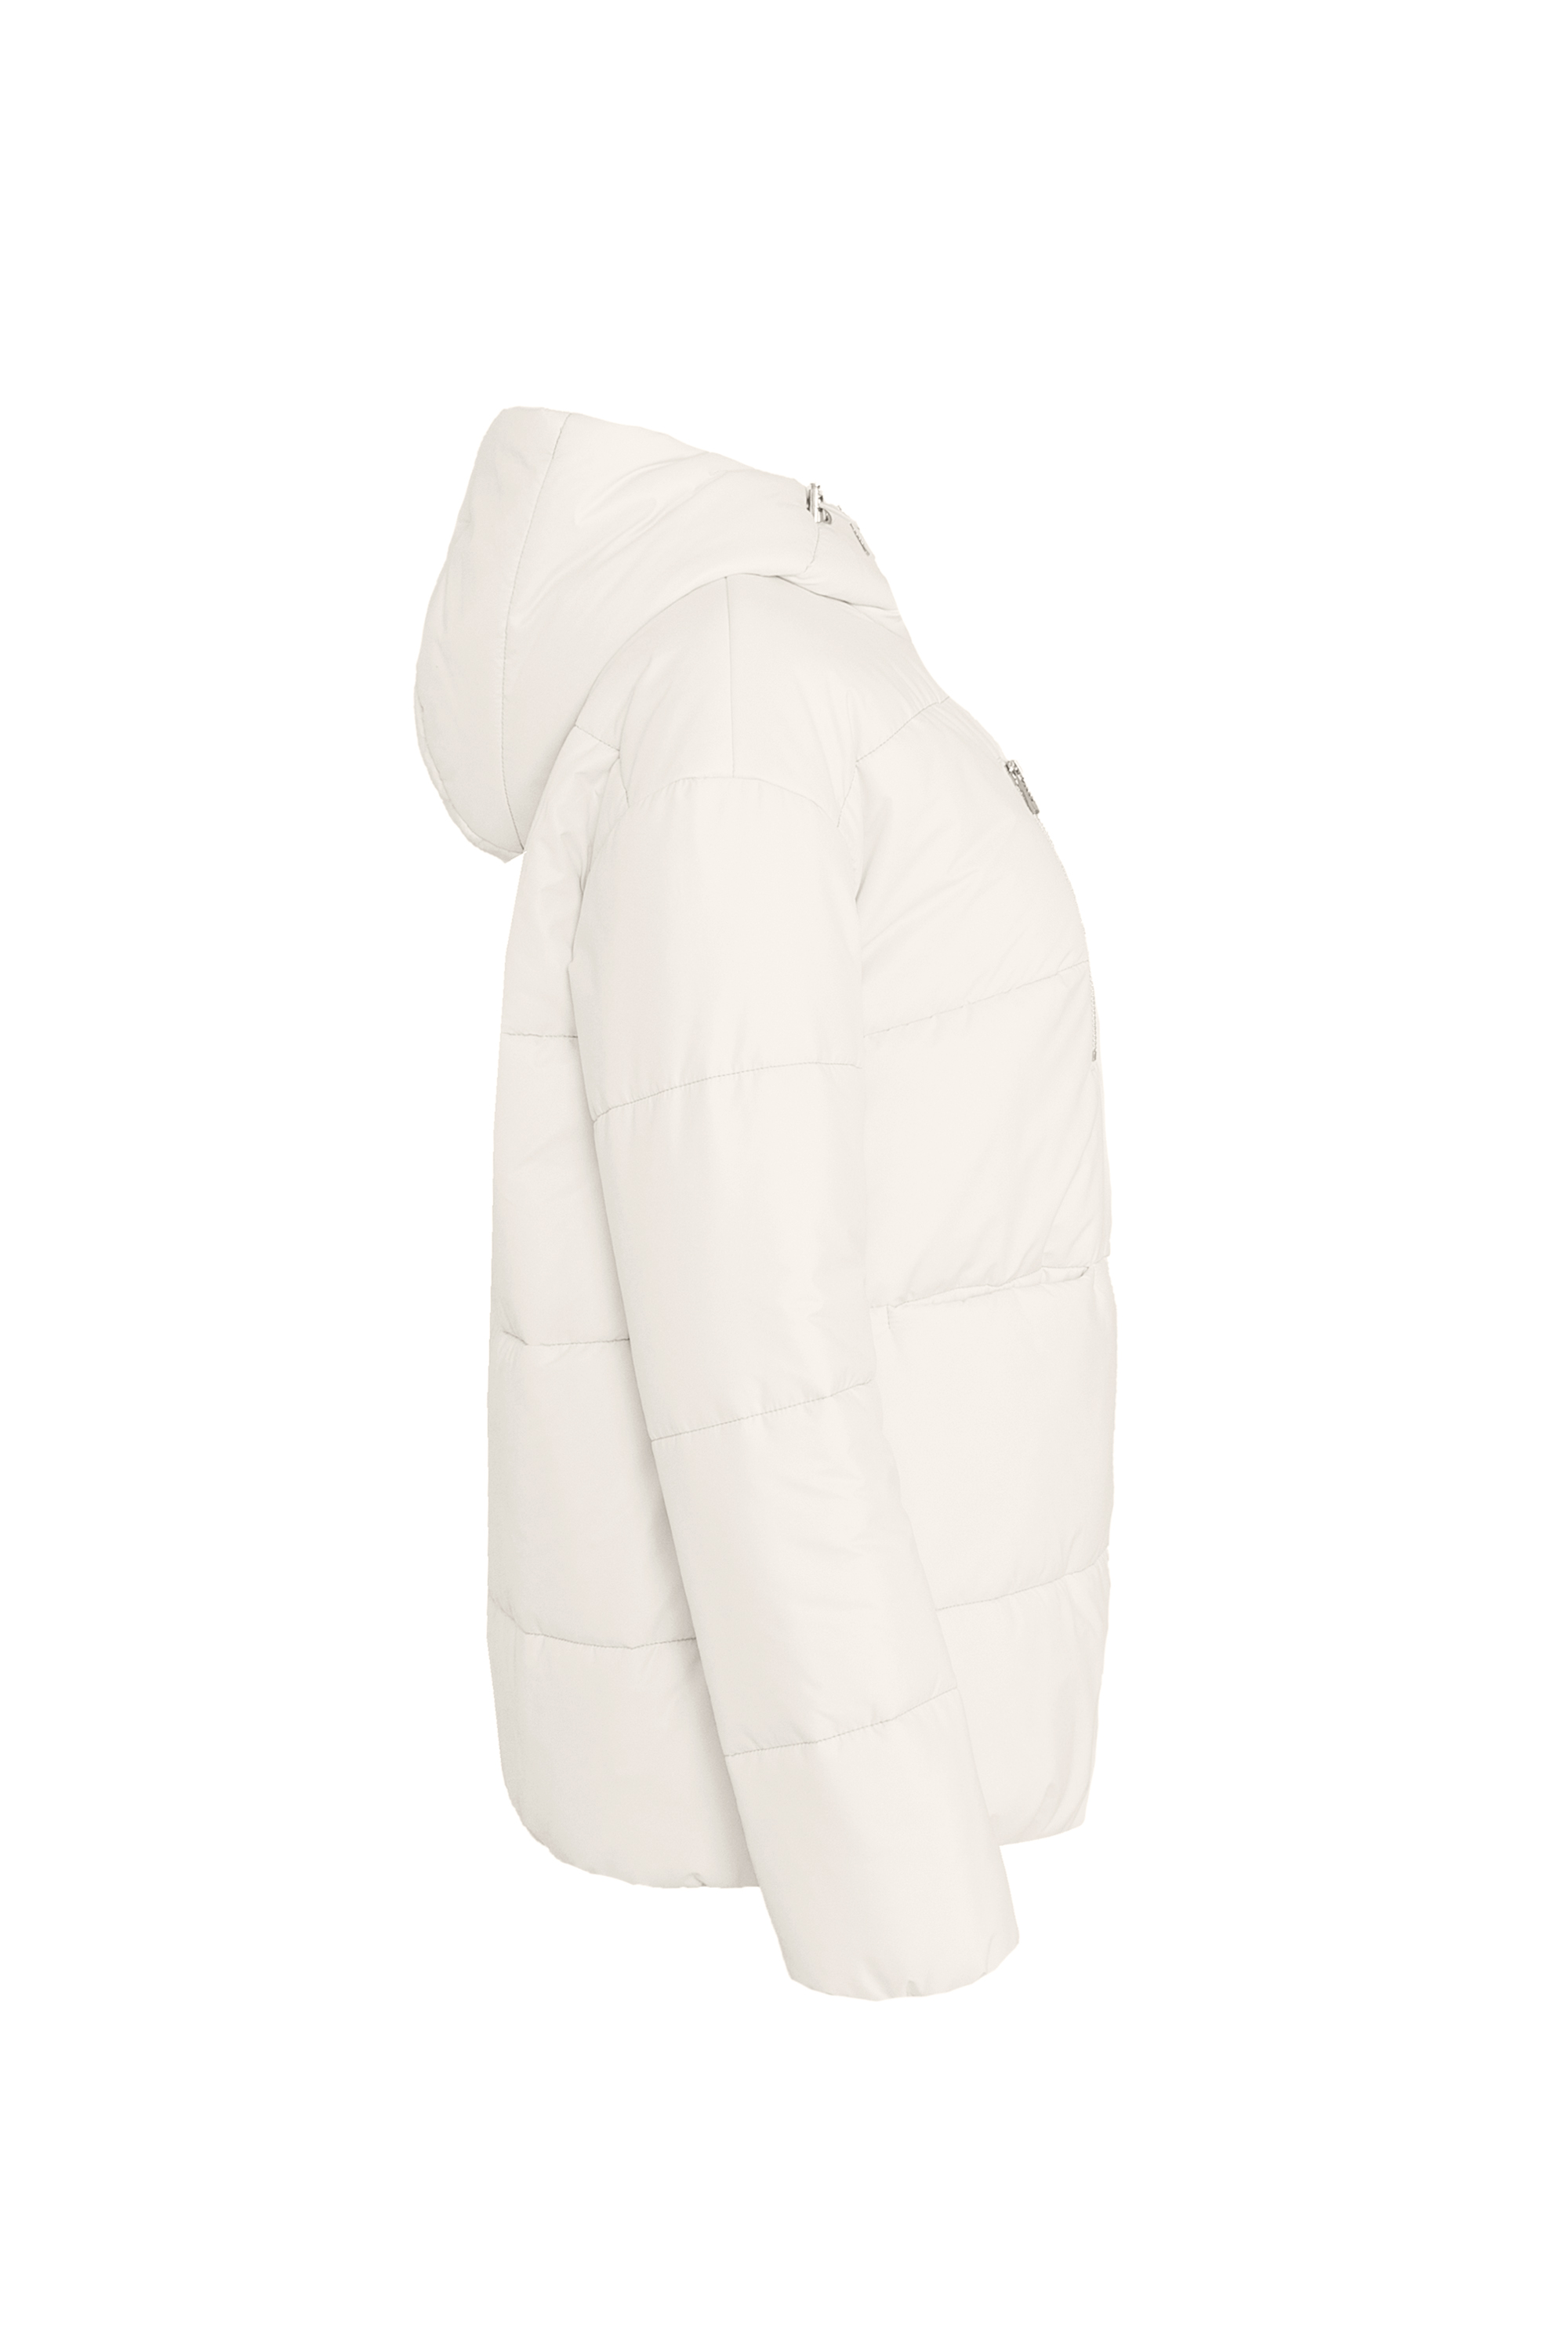 Куртка женская плащевая утепленная 4-13026-1. Фото 2.